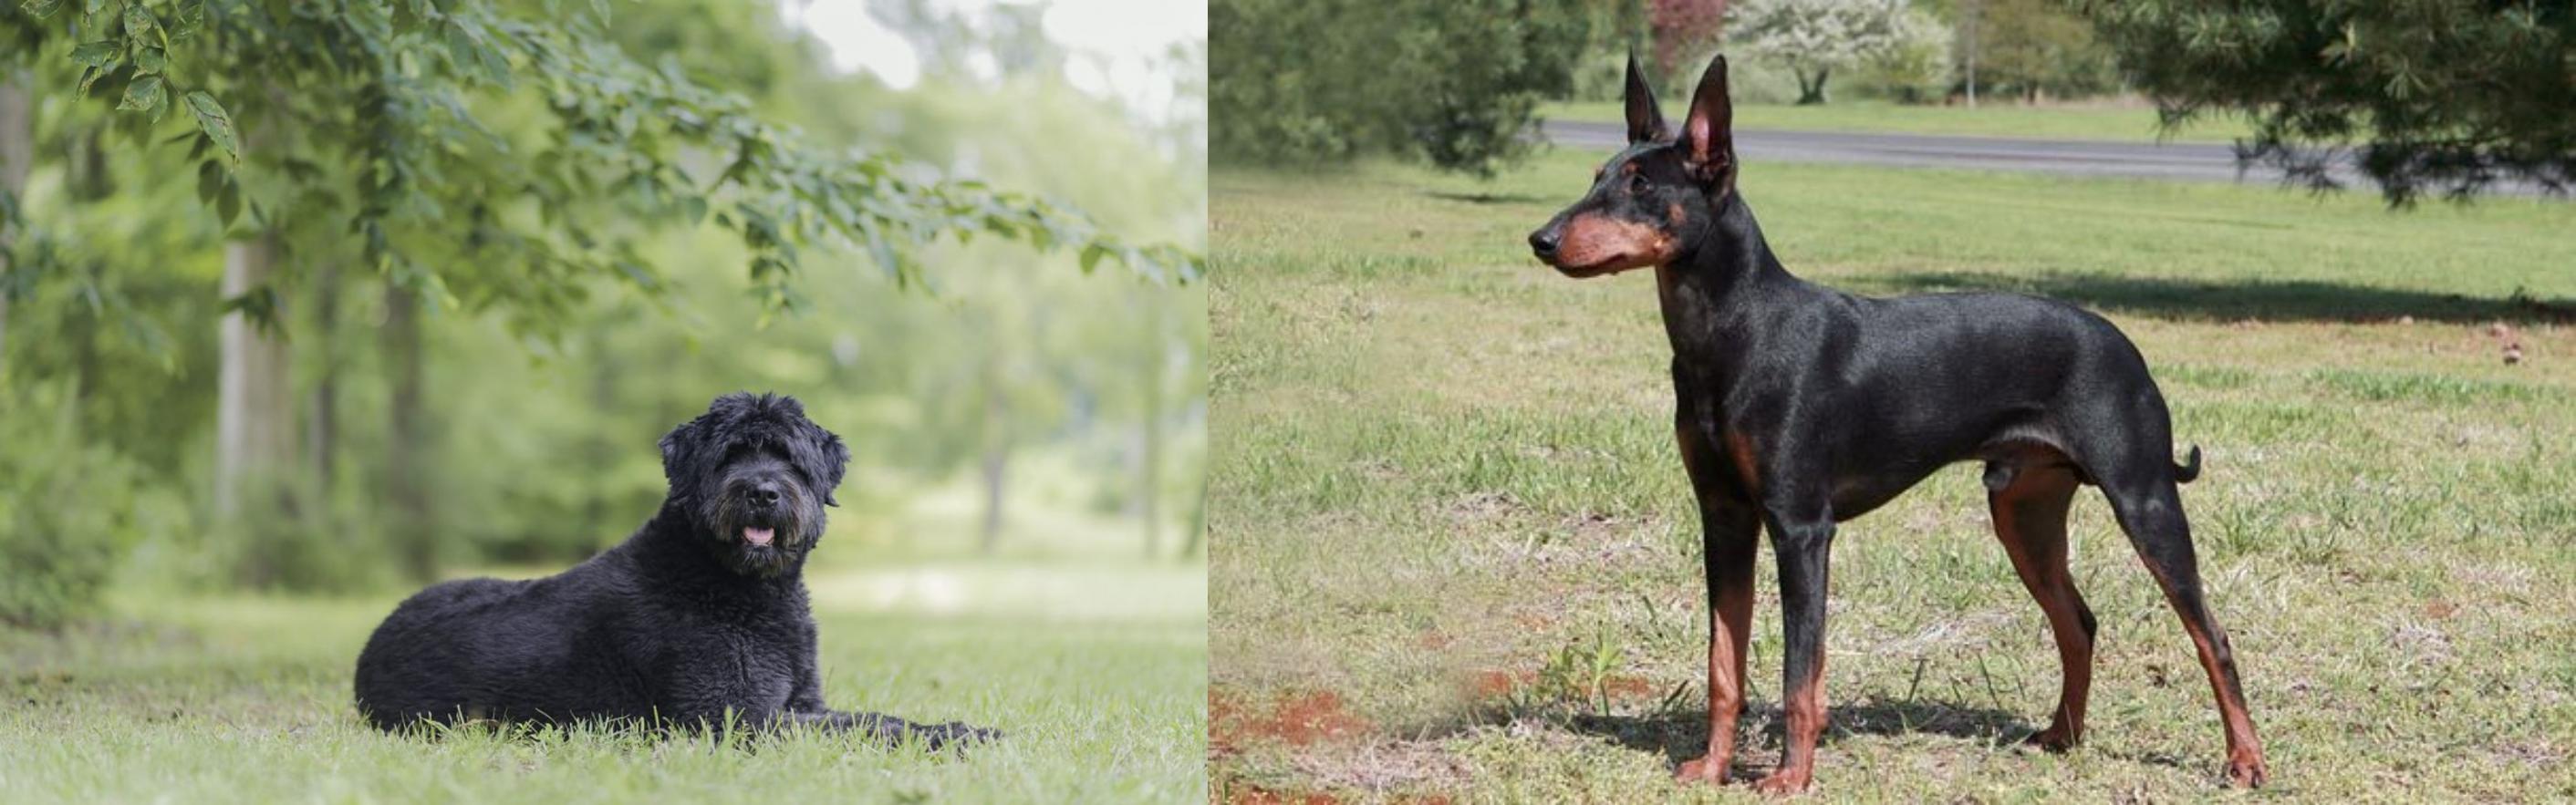 Manchester Terrier vs Bouvier des Flandres - Breed Comparison